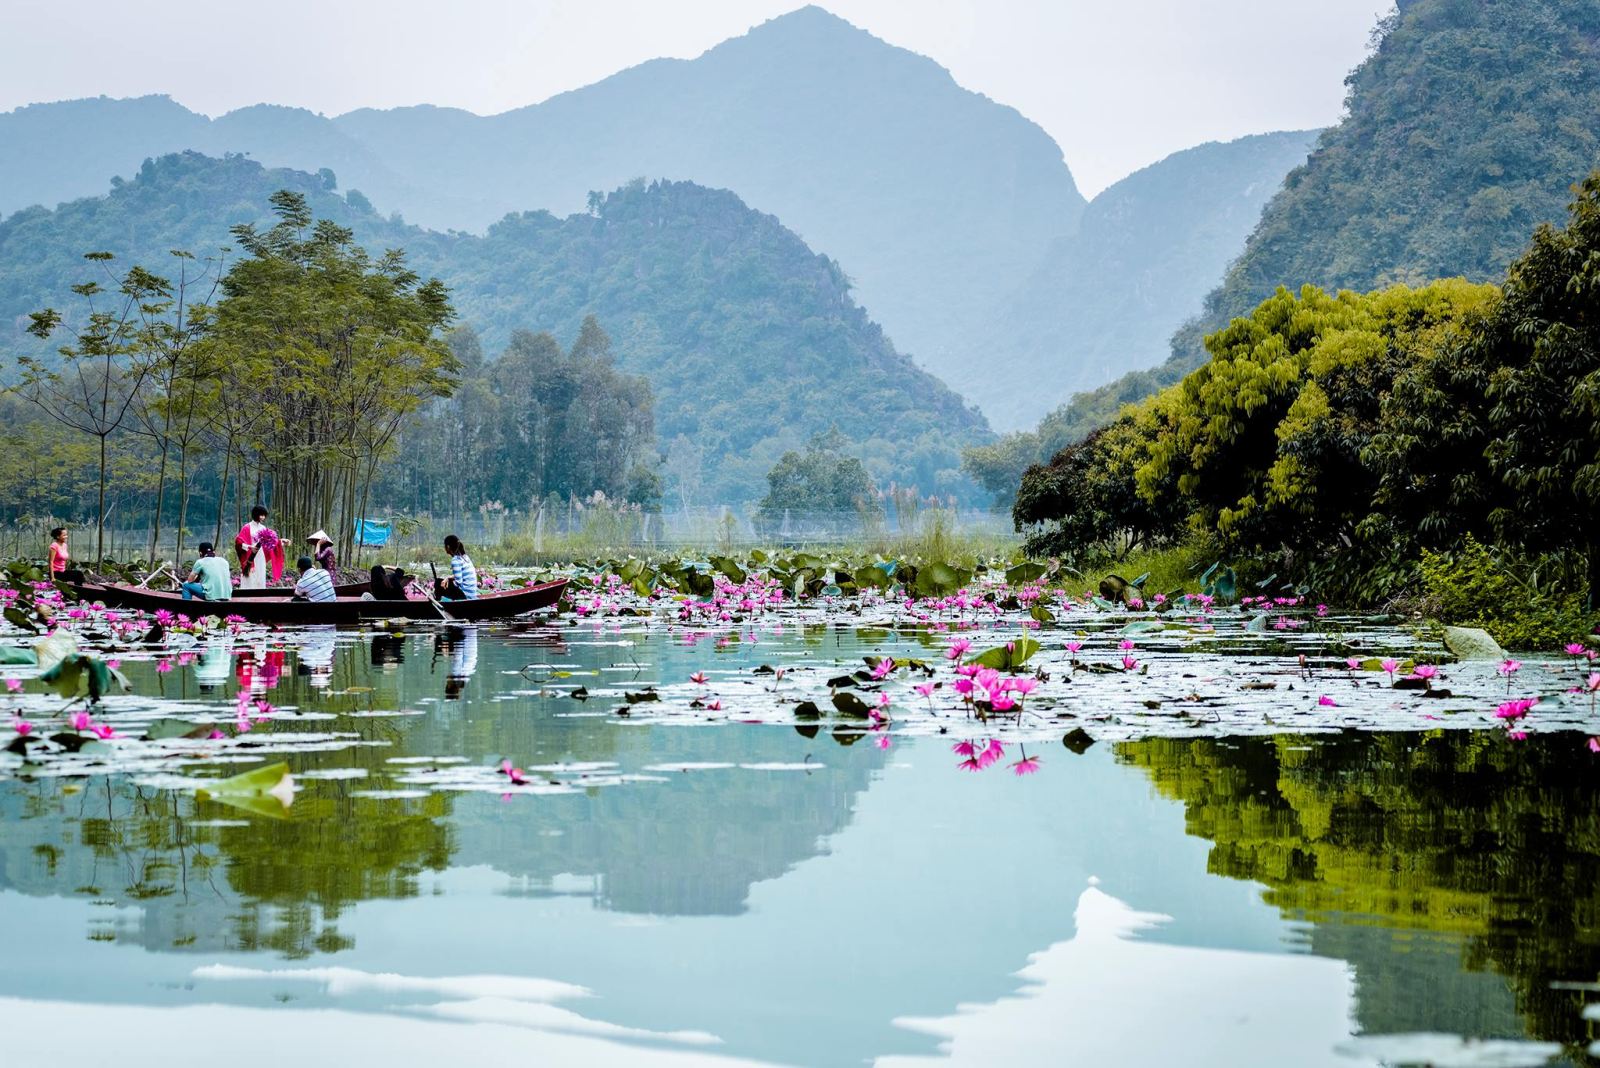 Hình ảnh quê hương, đất nước, con người Việt Nam tươi đẹp